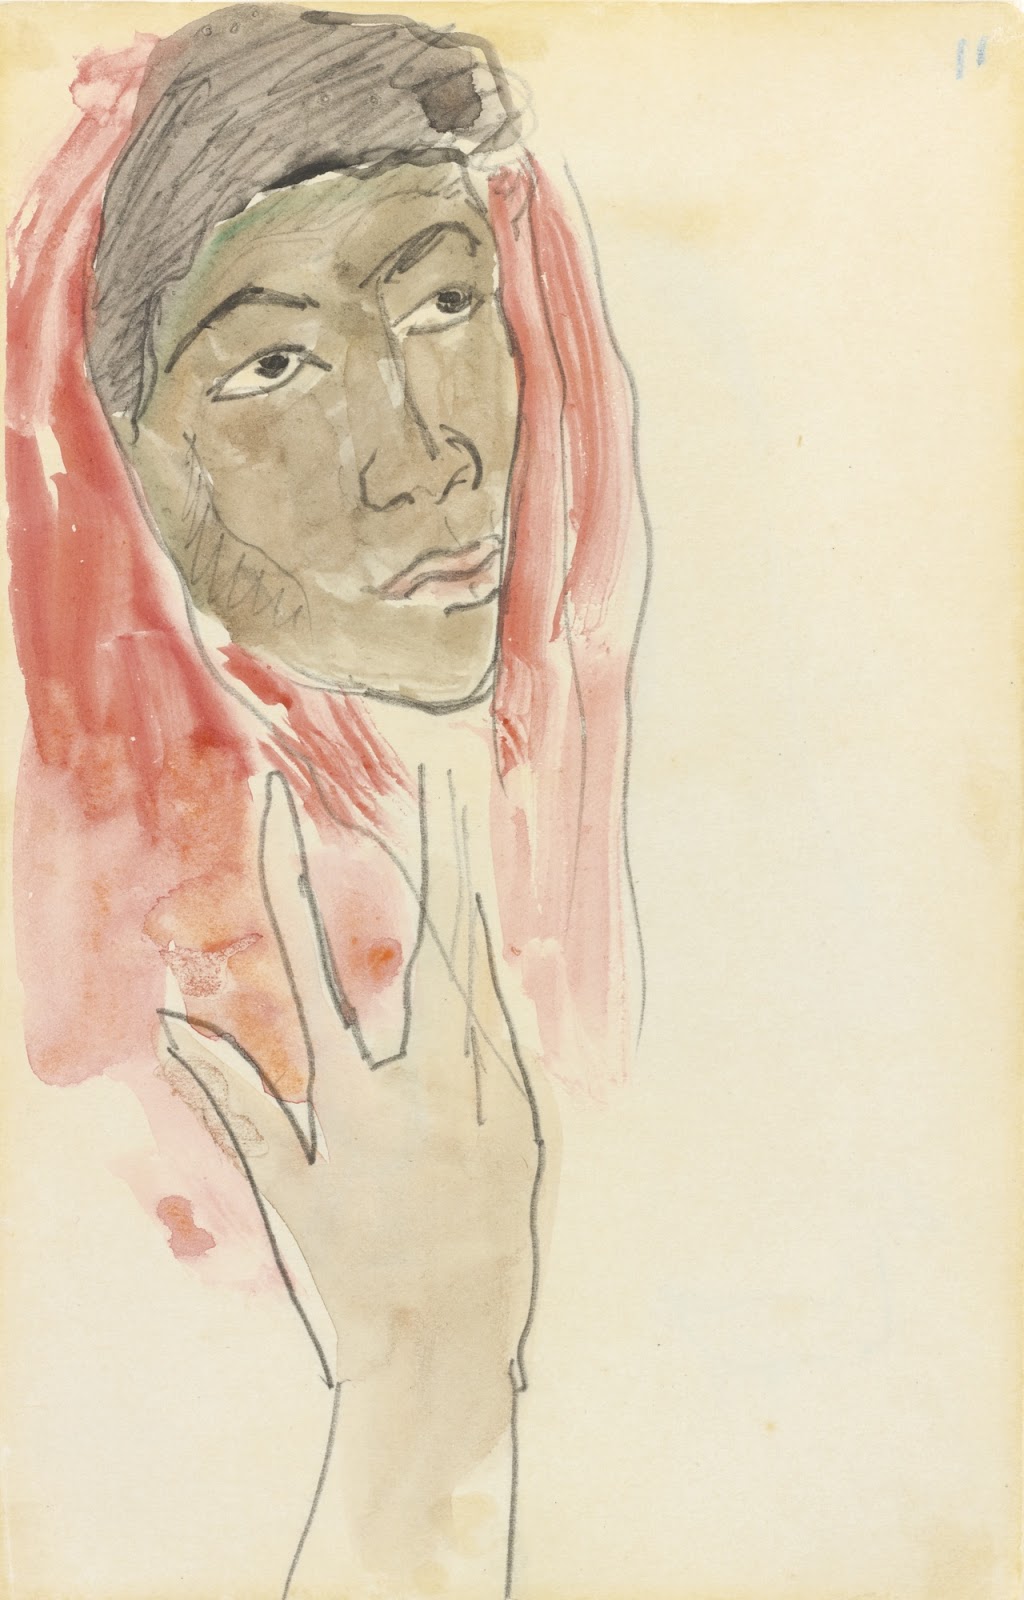 Paul+Gauguin-1848-1903 (384).jpg